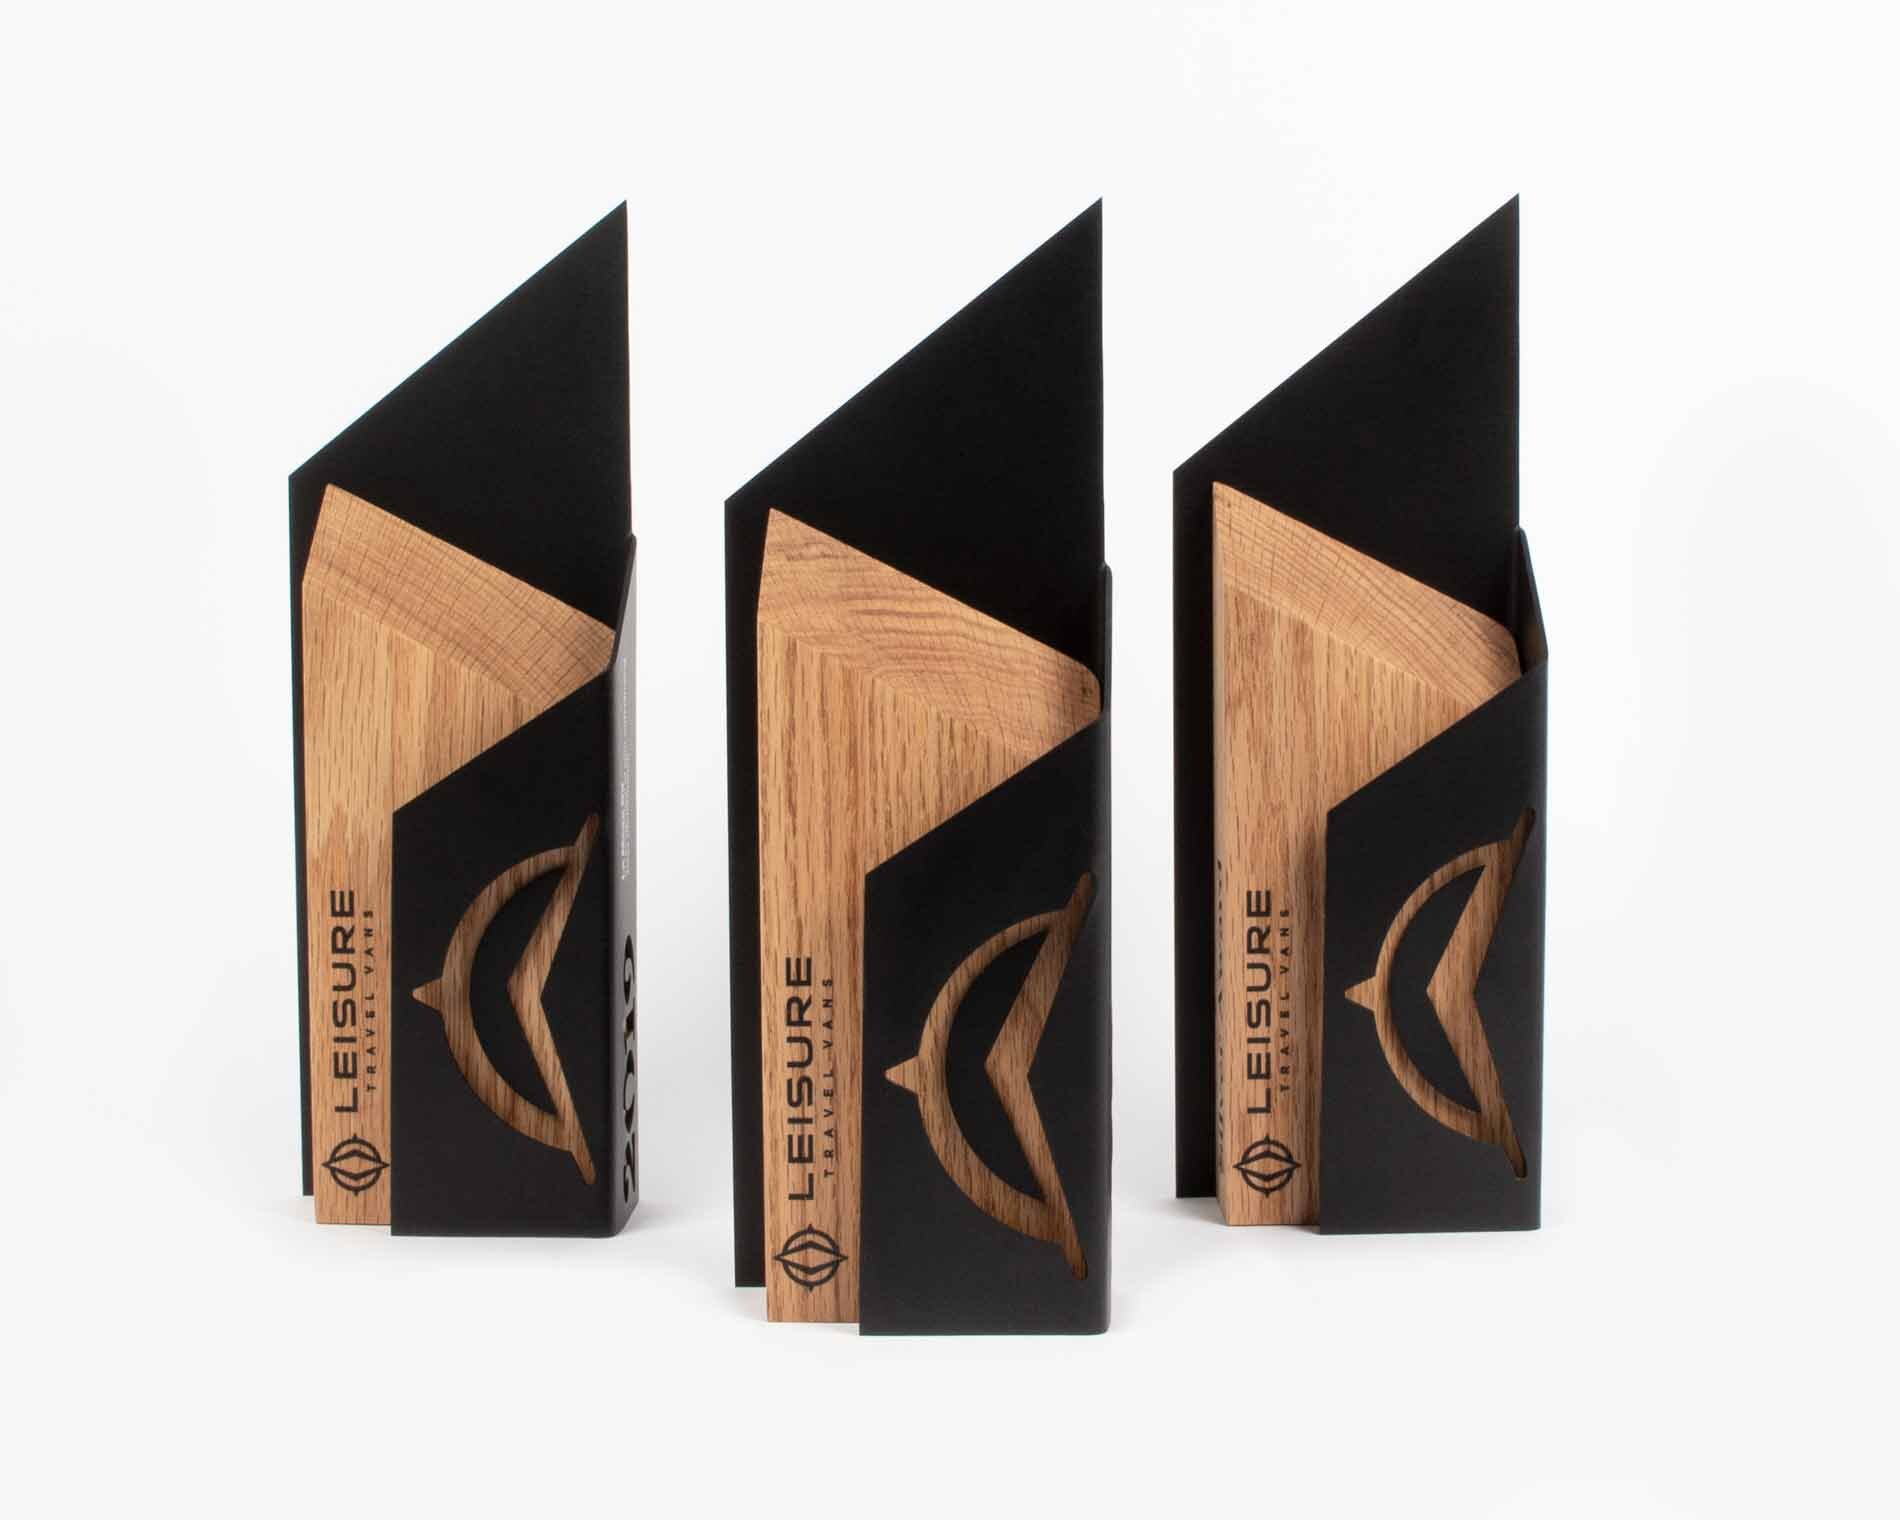 Leisure Travel vans dealer appreciation awards custom wood and metal laser engraved